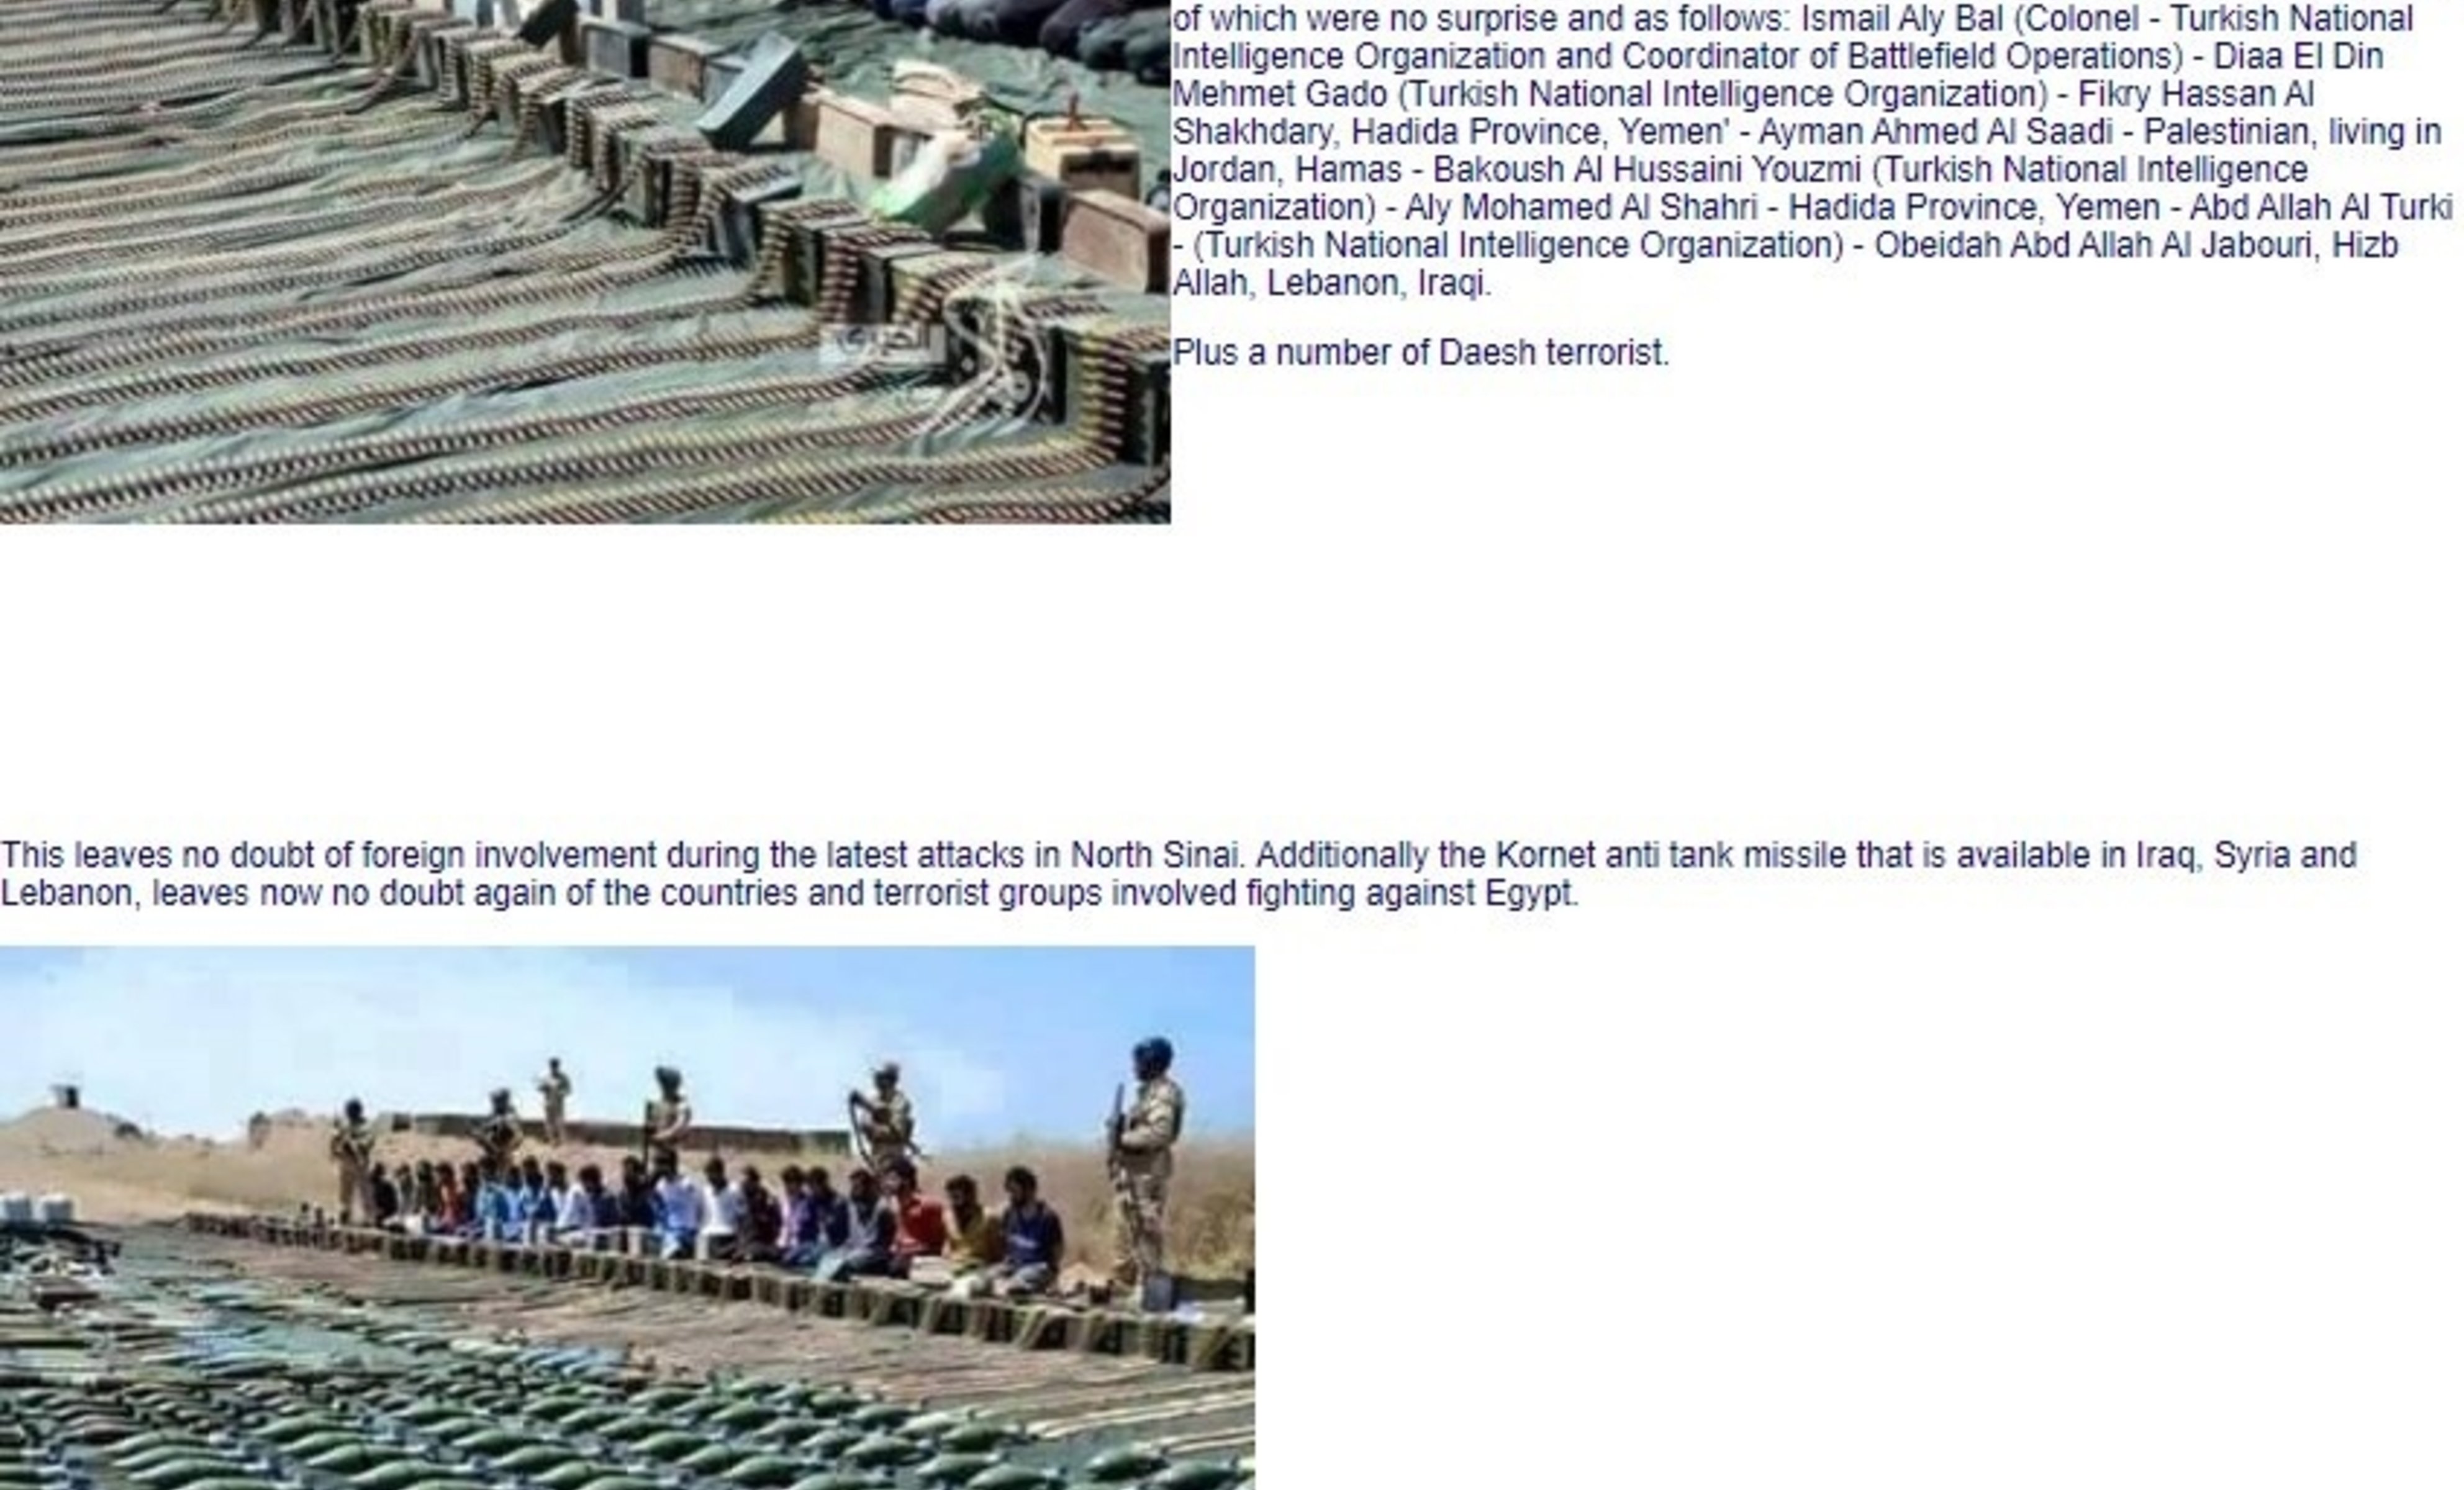 בשתי התמונות נראה מבצע ביטחוני של הכוחות המצריים בחצי האי סיני